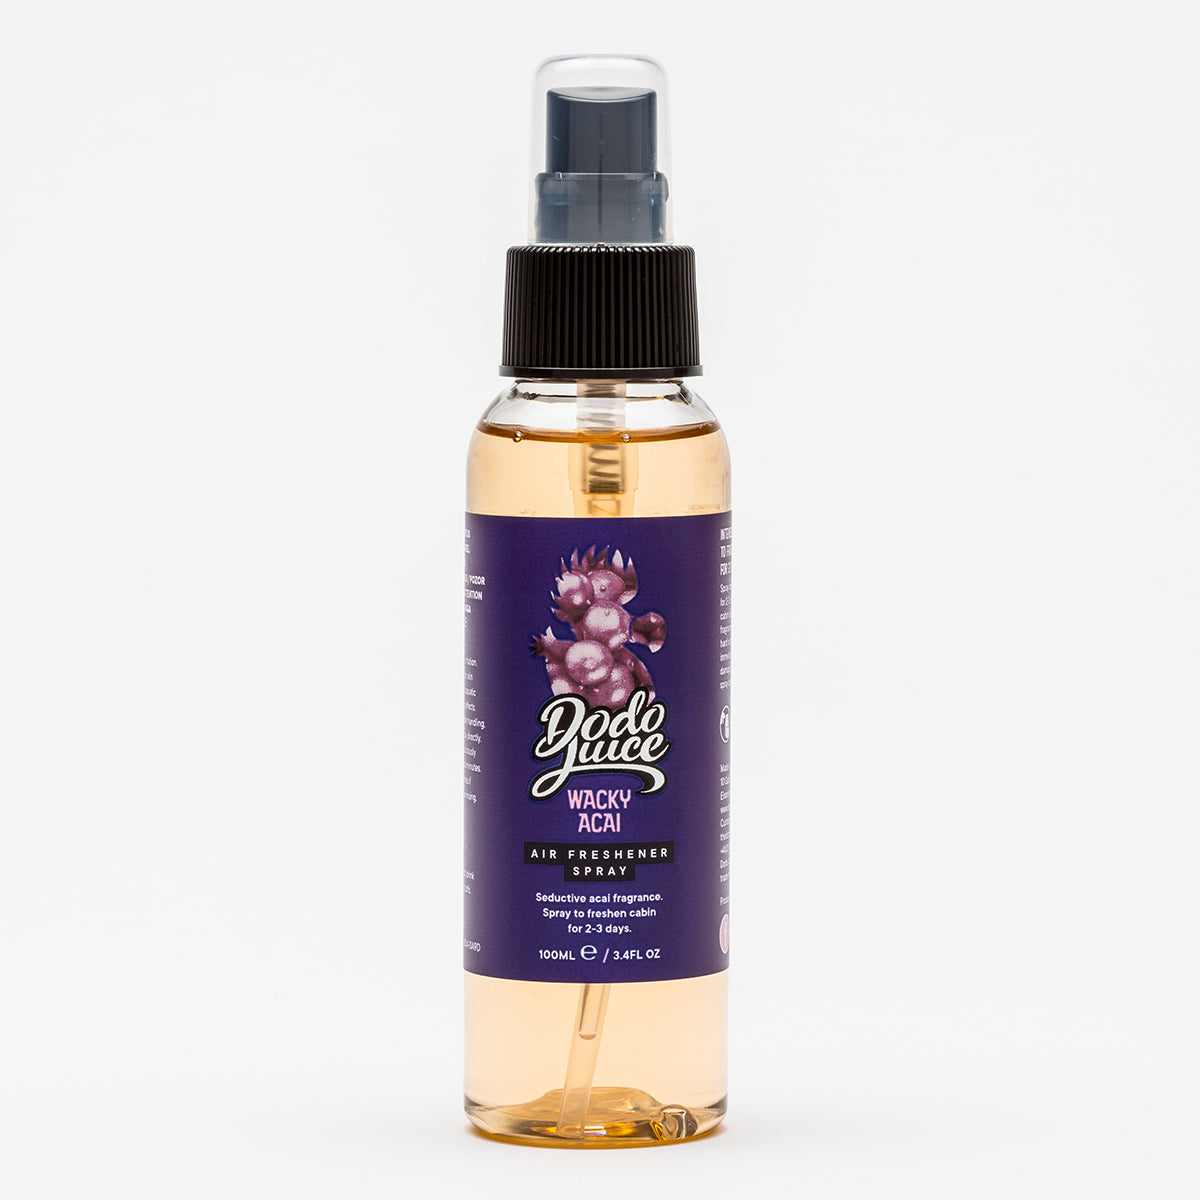 Wacky Acai 100ml - acai berry fragrance air freshener spray HS 9616101000